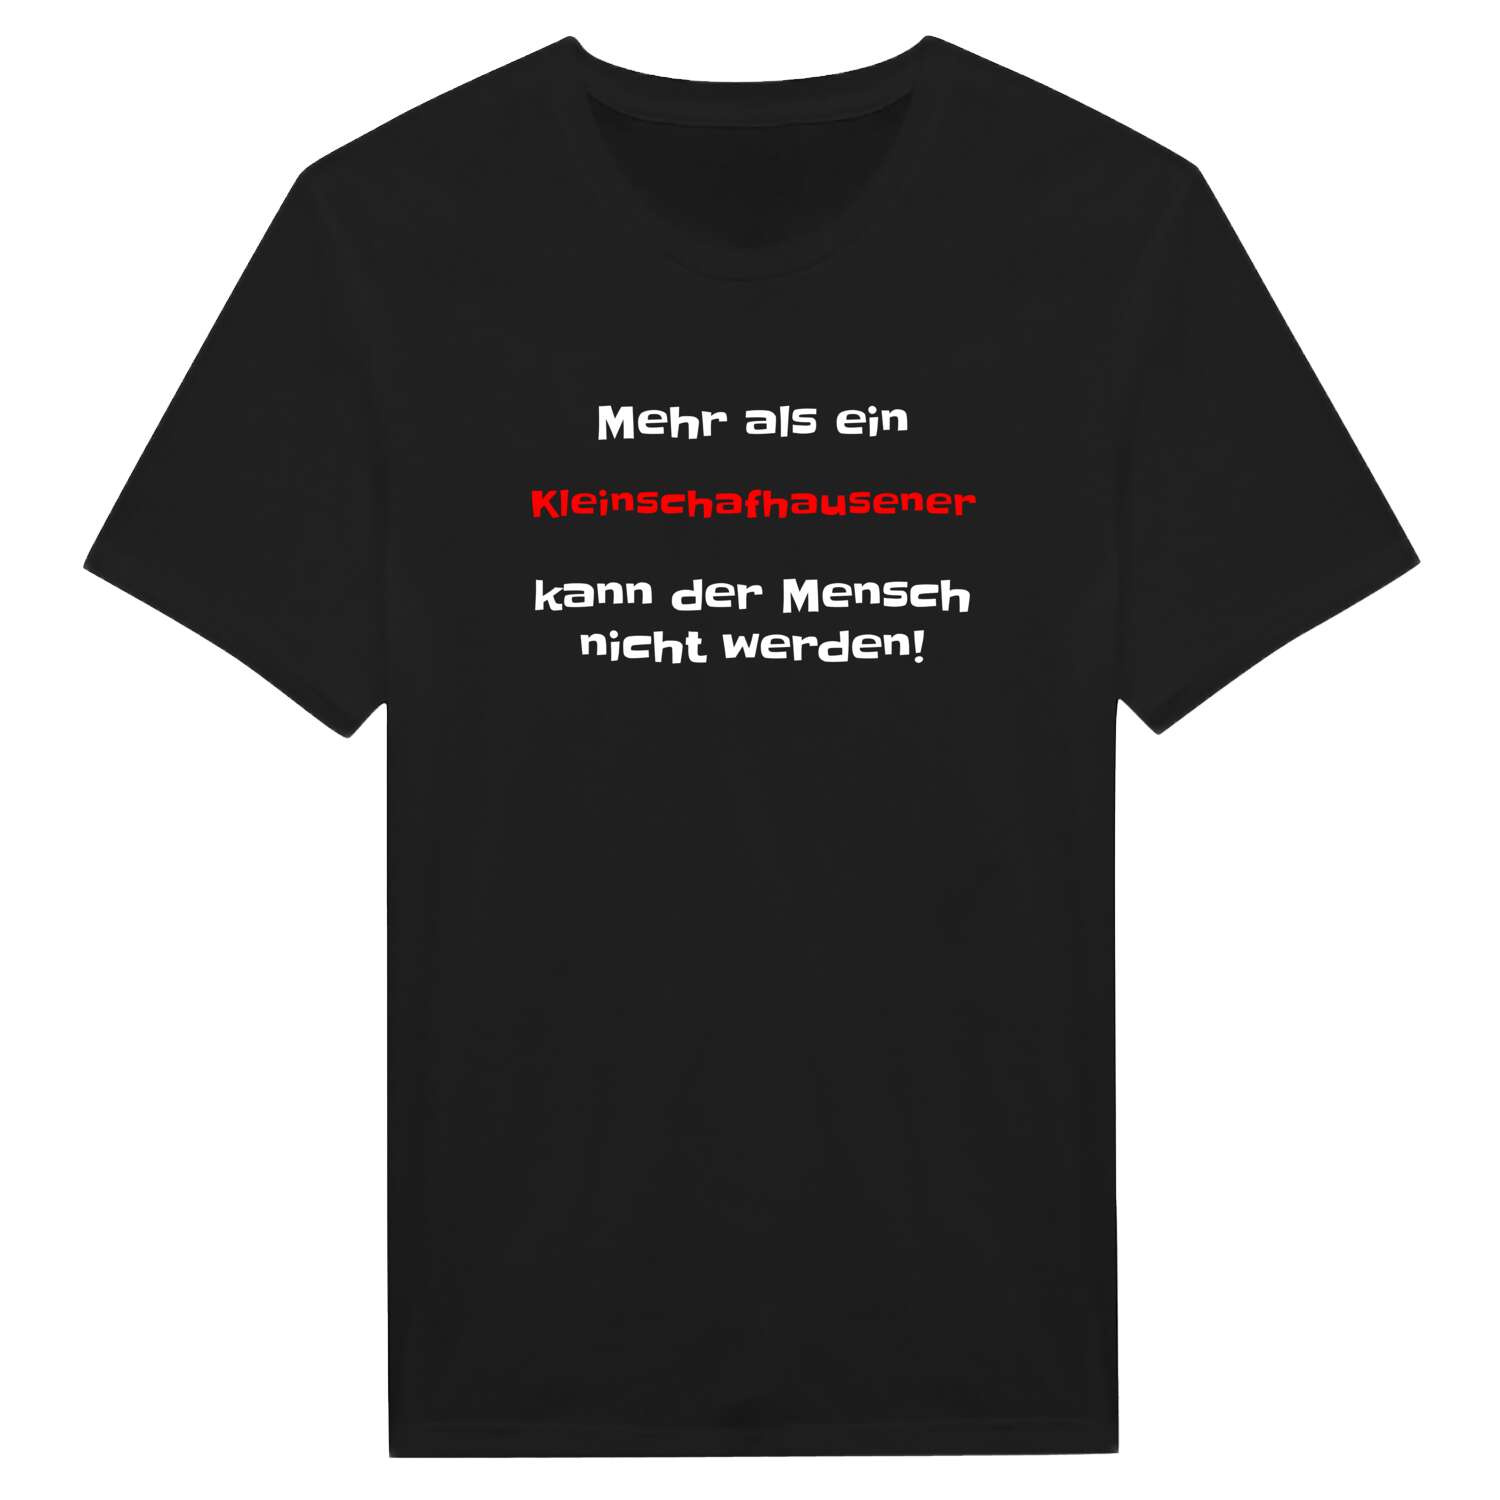 Kleinschafhausen T-Shirt »Mehr als ein«